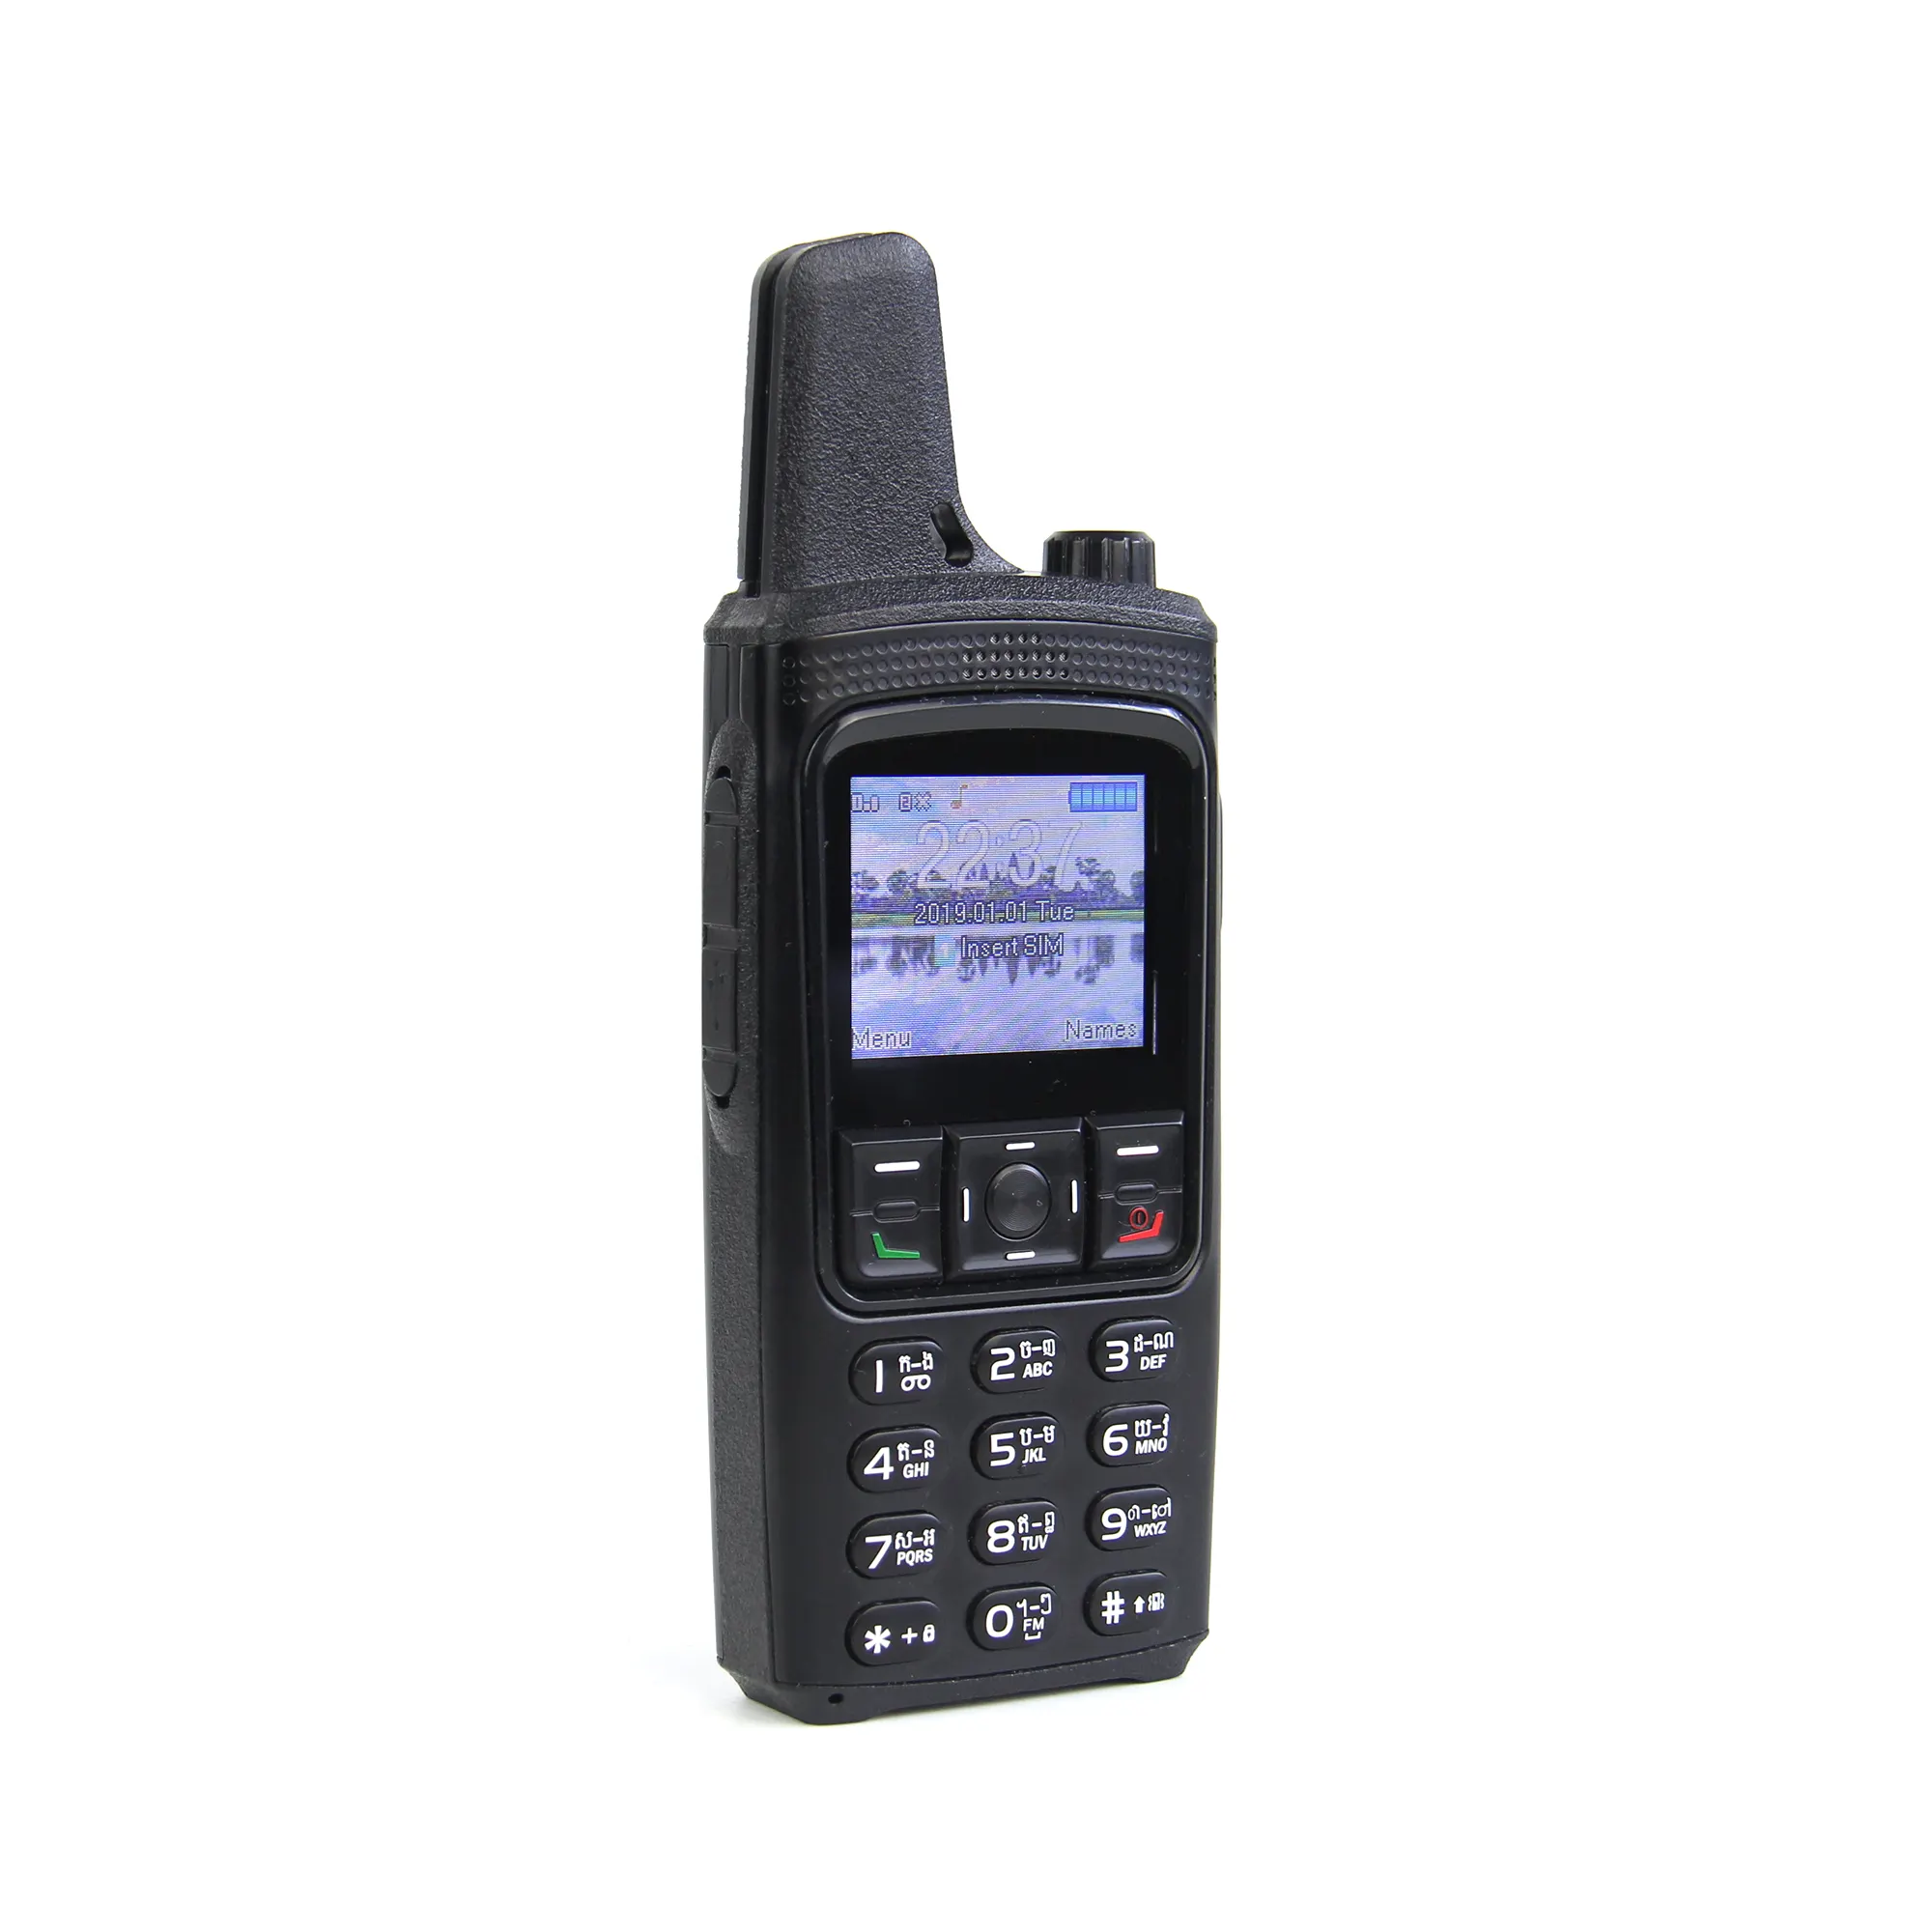 Pretech fabrika toplu MT6261D 1.77 inç QVGA 128x160 özellikli telefonlar walkie talkie